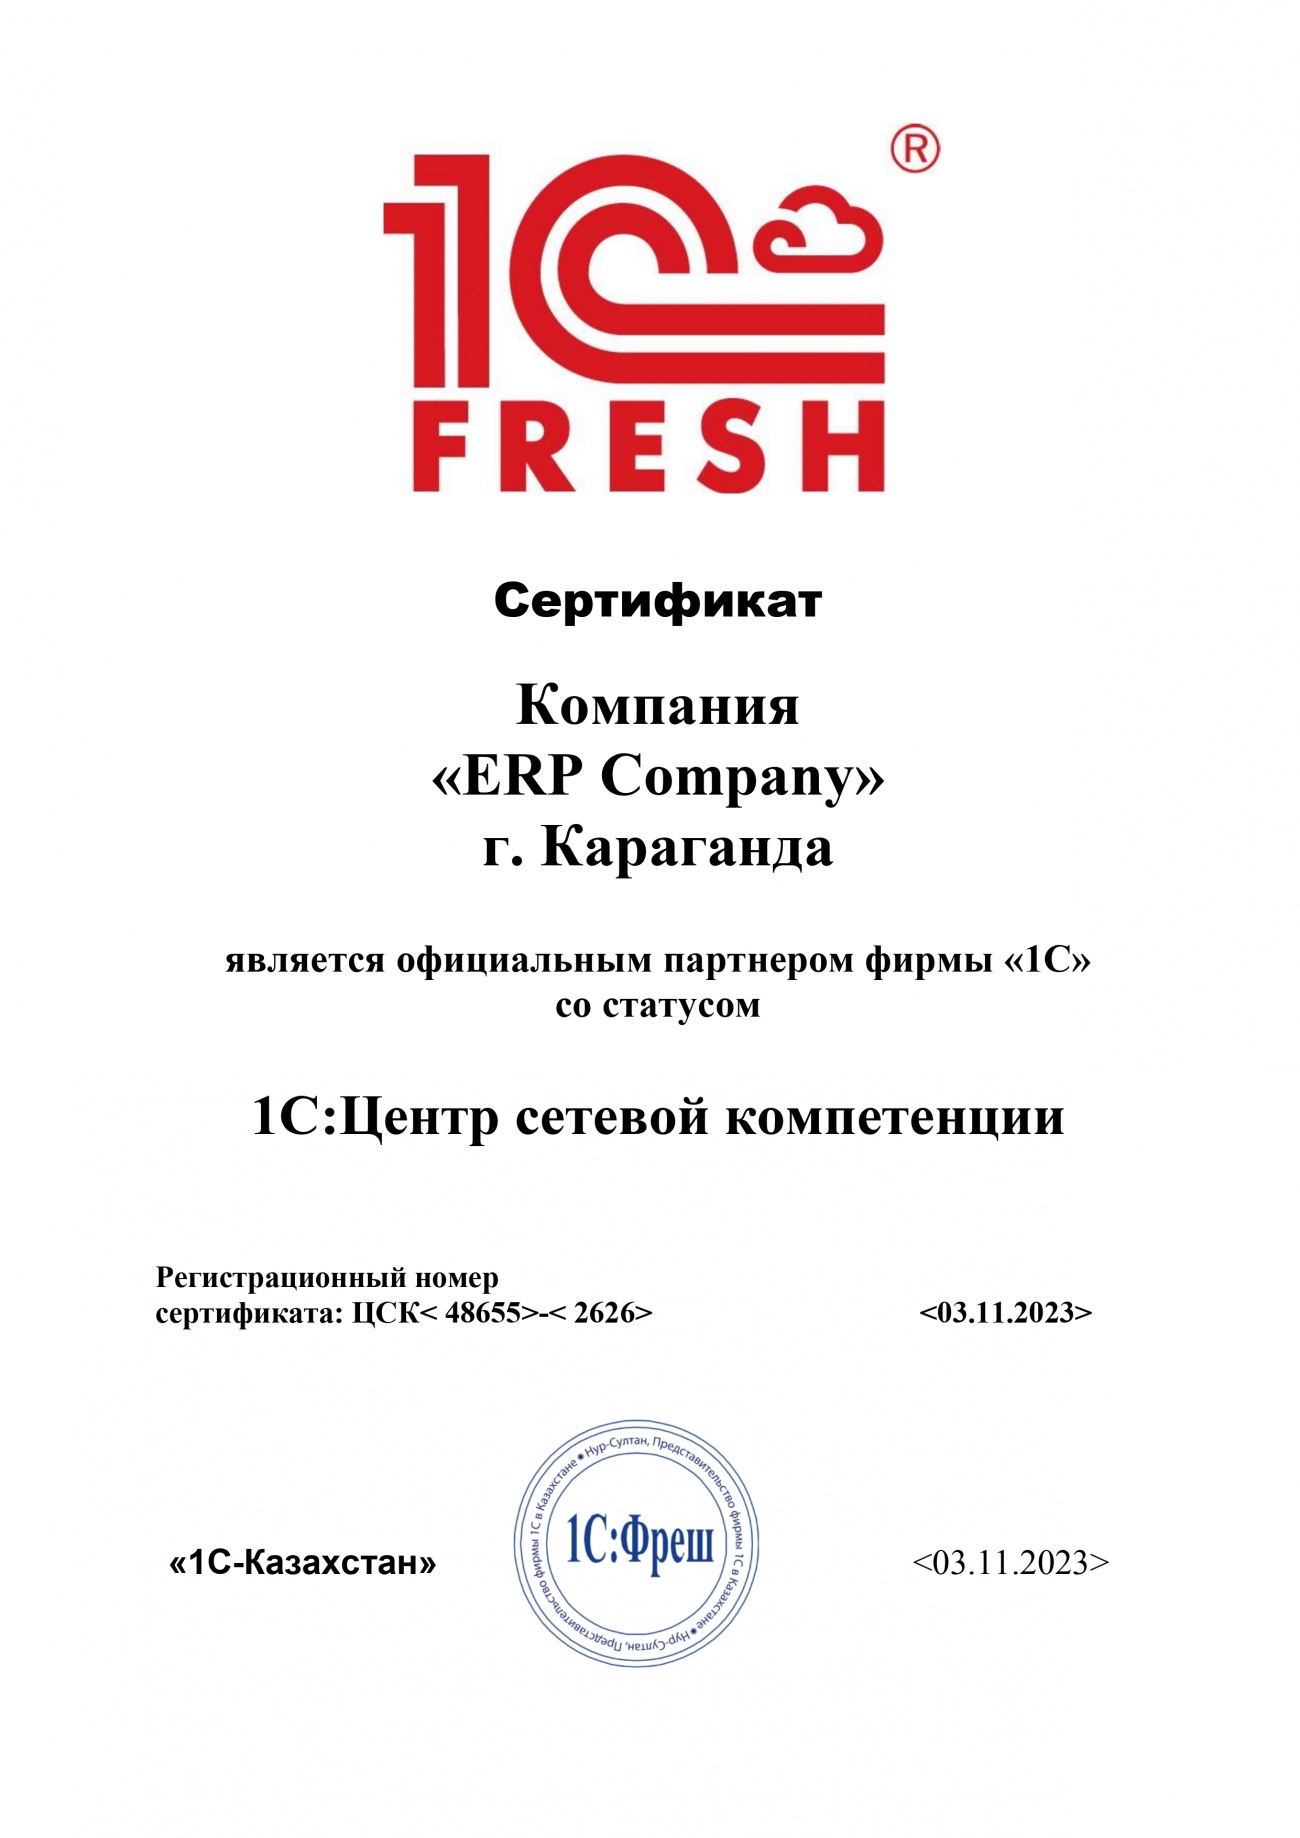 Сертификат  1C:Центр сетевой компетенции